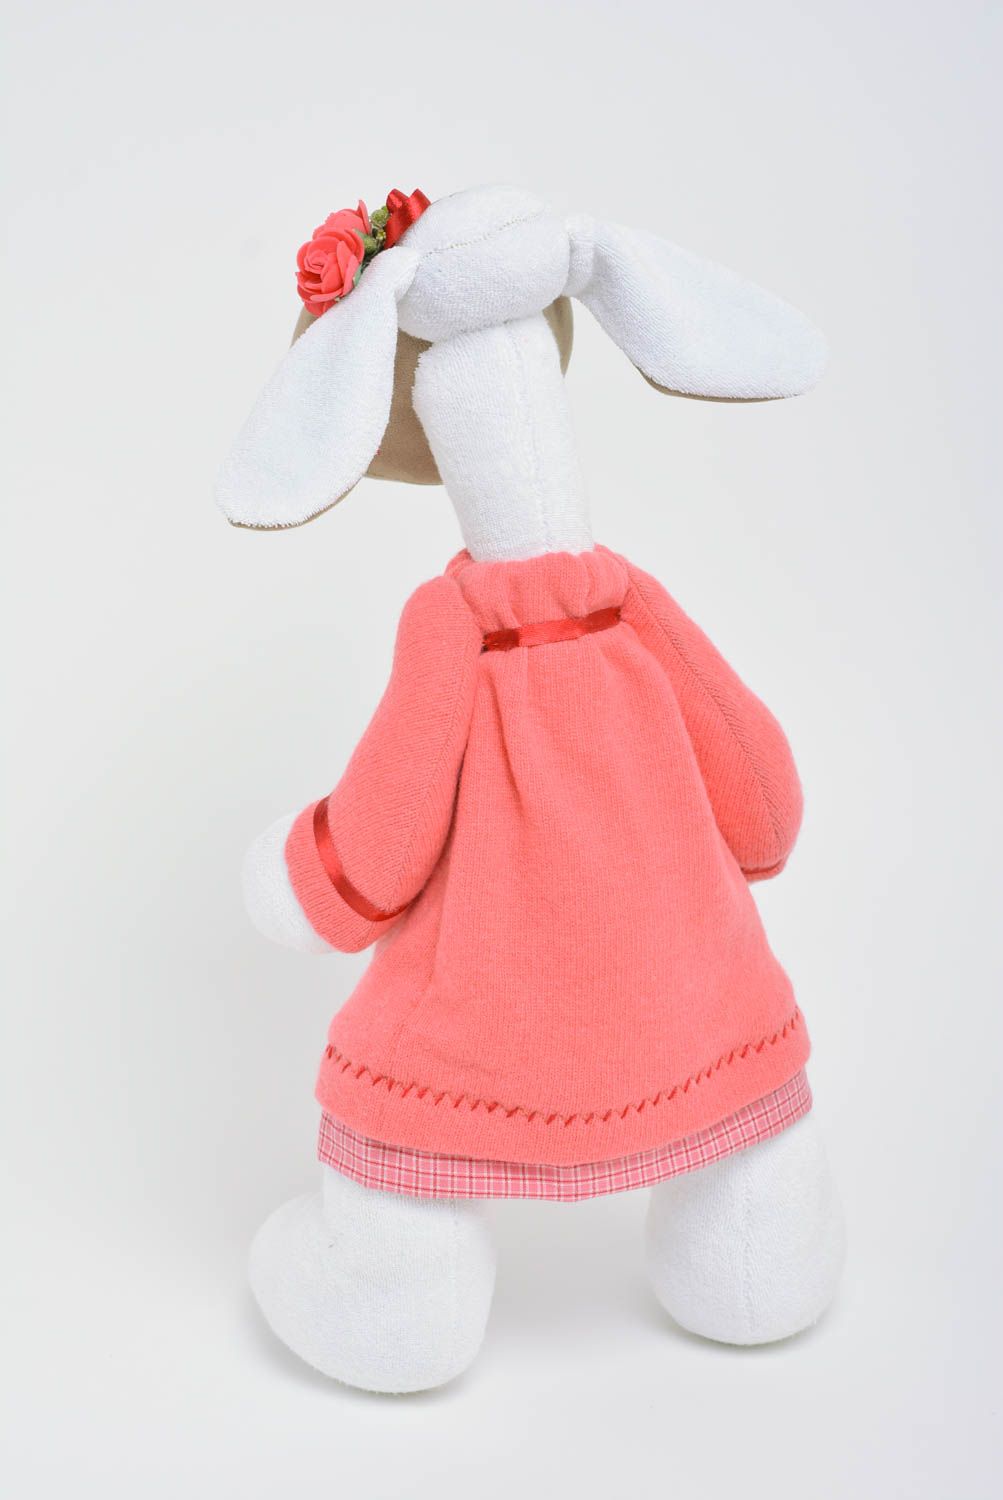 Handgemachtes Spielzeug aus Stoff in Form vom Nilpferd in rosafarbenem Kleid foto 3